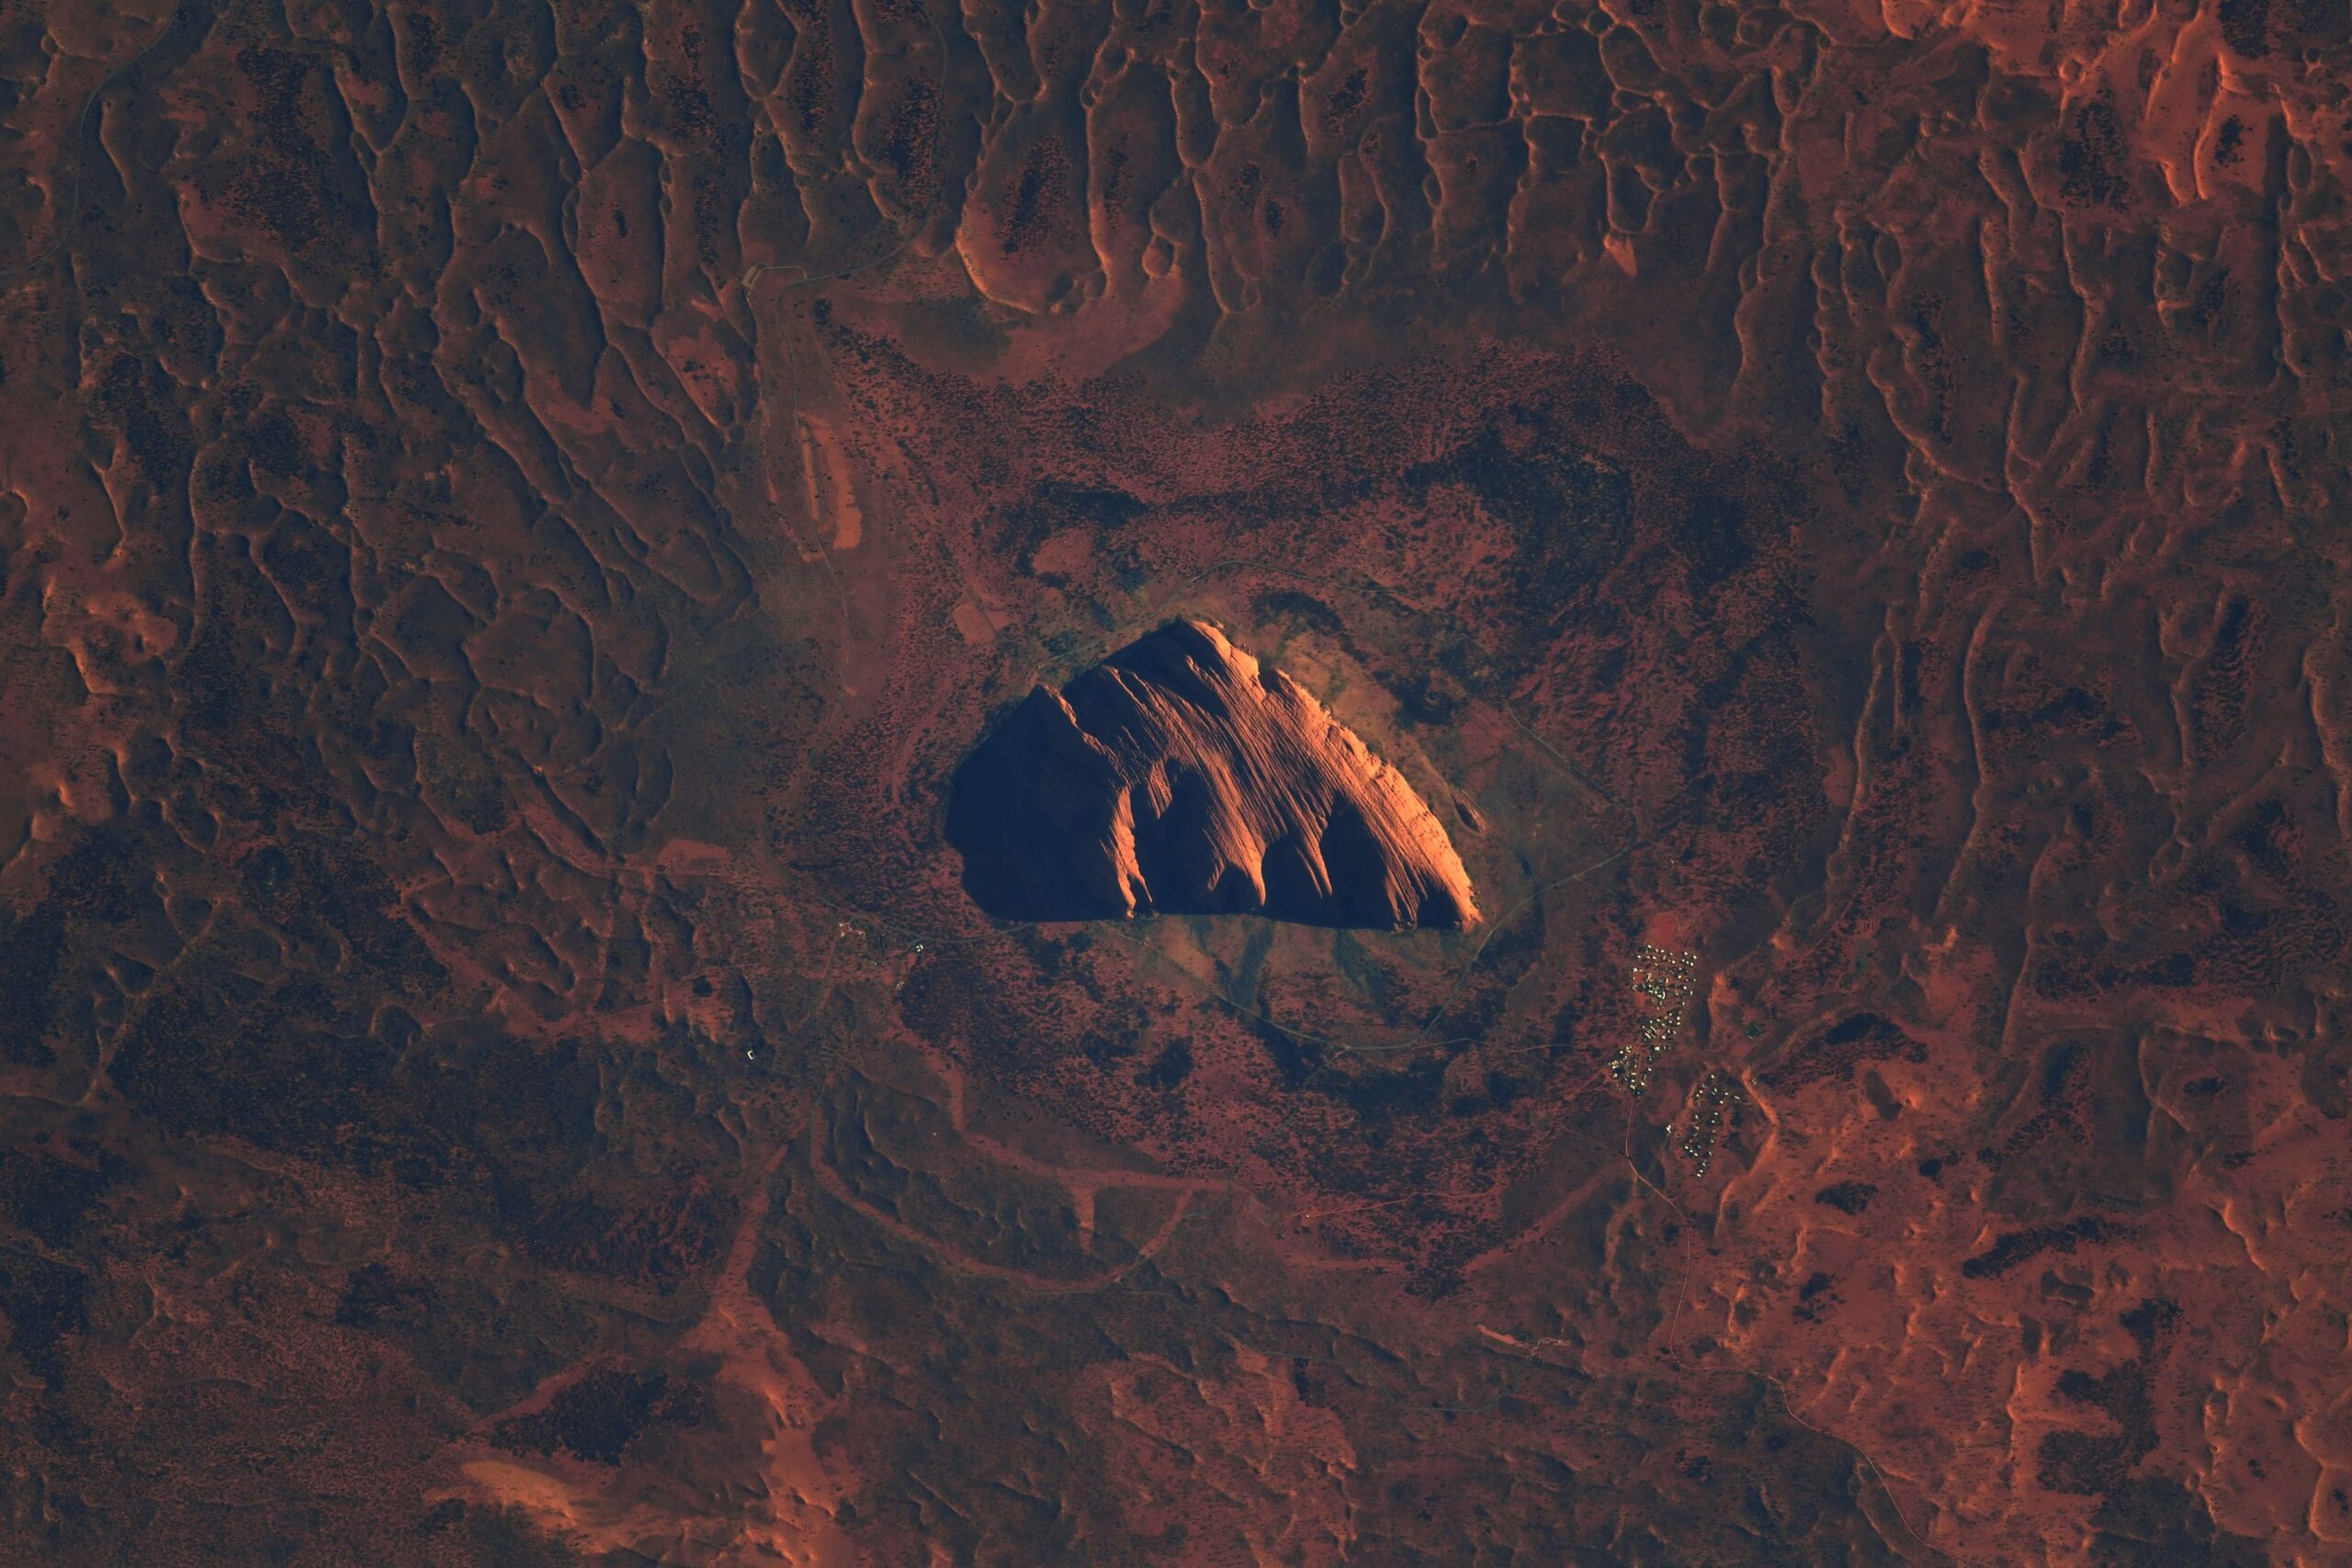 Thomas Pesquet captura una increíble imagen del Monte Sagrado desde el espacio